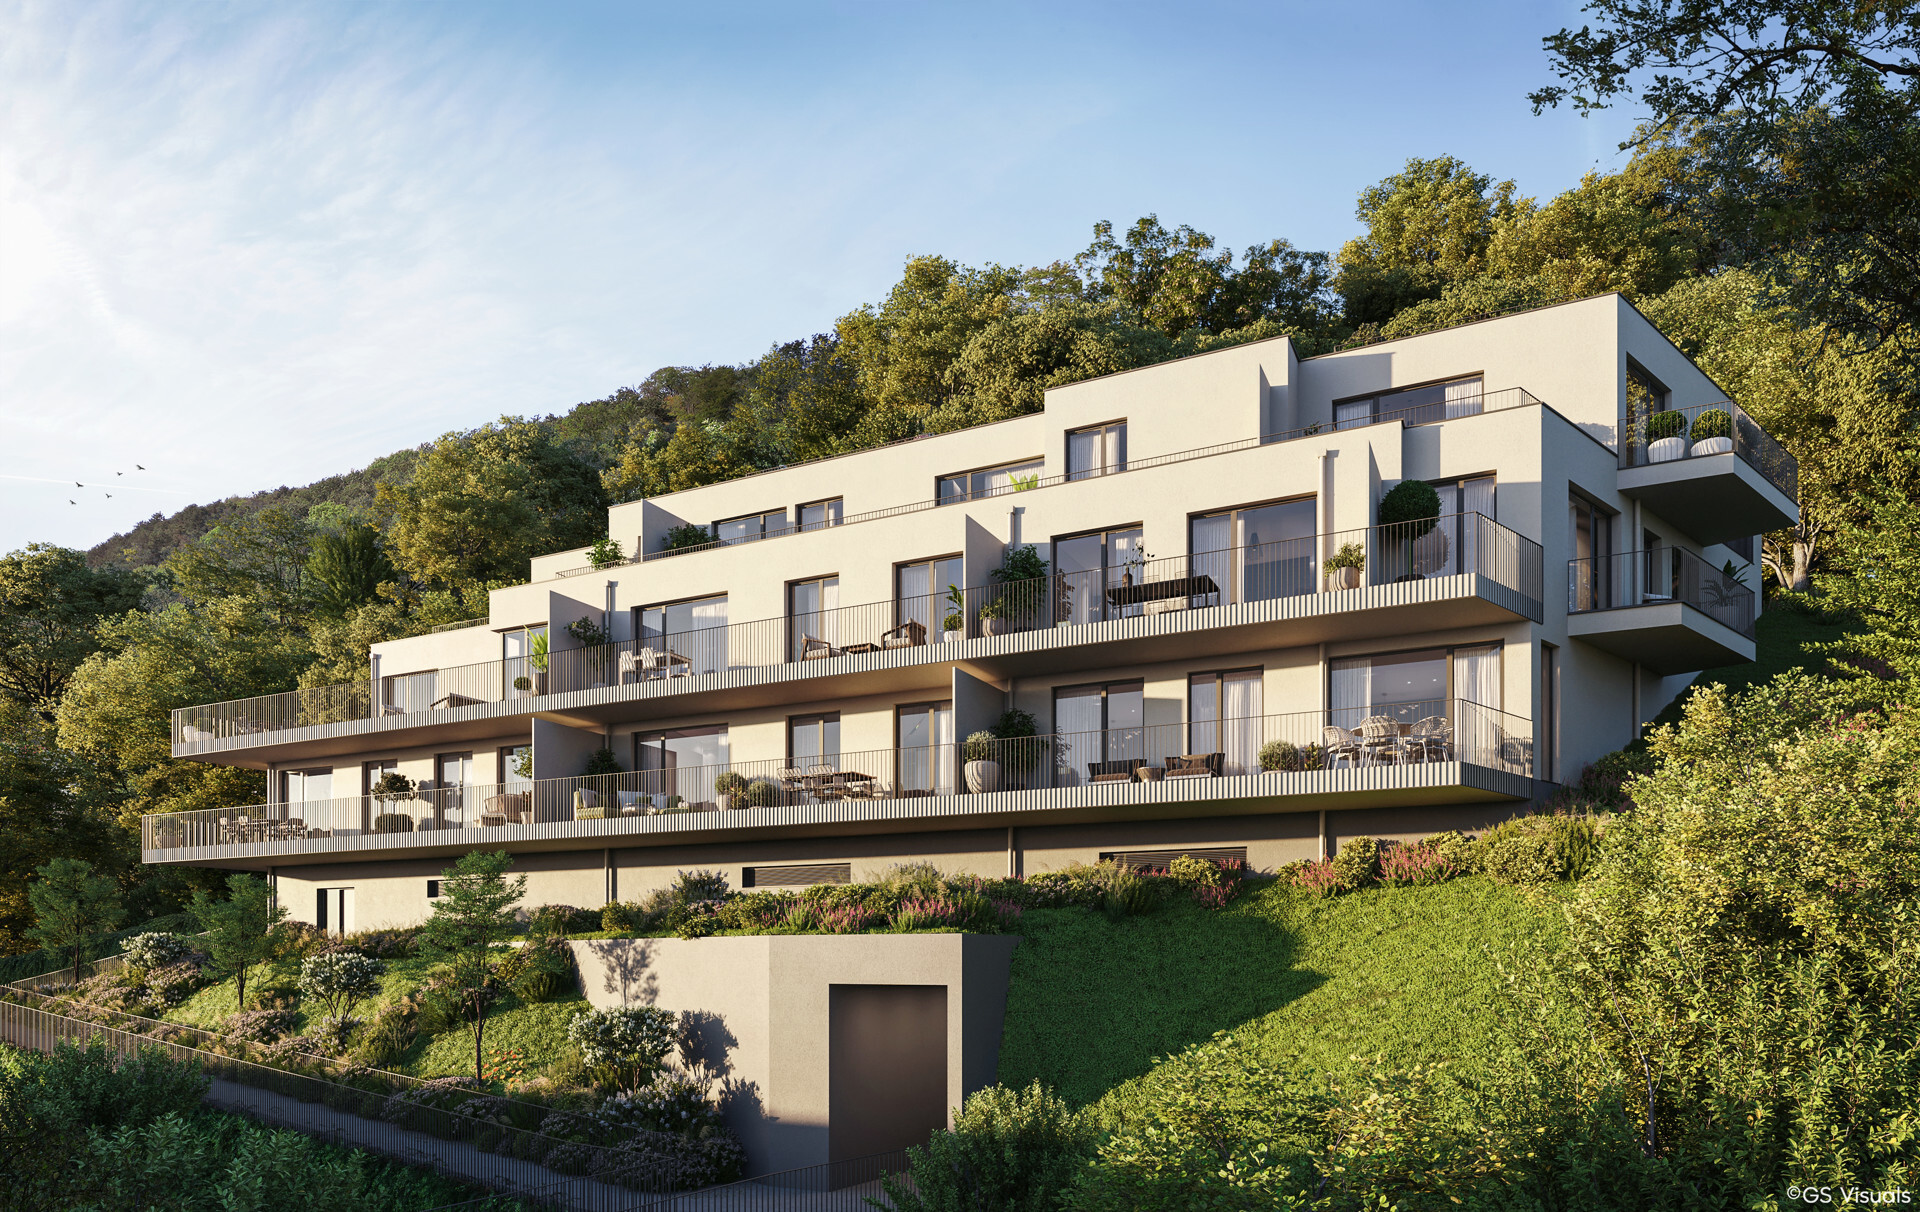 Terrassenwohnung mit Blick Richtung Wienerwald - 3 Zimmer im Dachgeschoß zu kaufen in 2391 Kaltenleutgeben